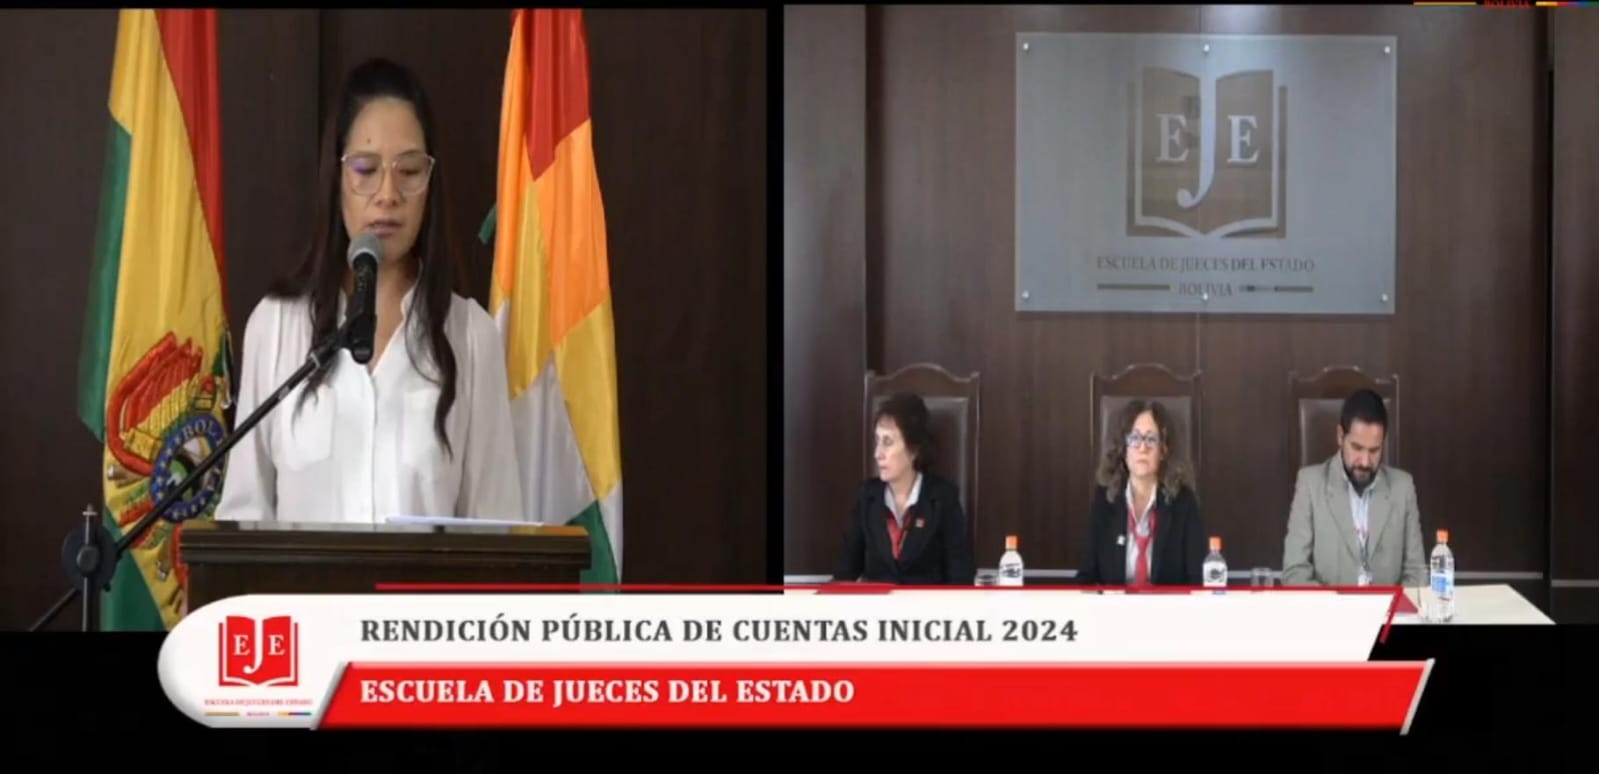 LA ESCUELA DE JUECES DEL ESTADO, PRESENTÓ LA RENDICIÓN PÚBLICA DE CUENTAS INICIAL 2024